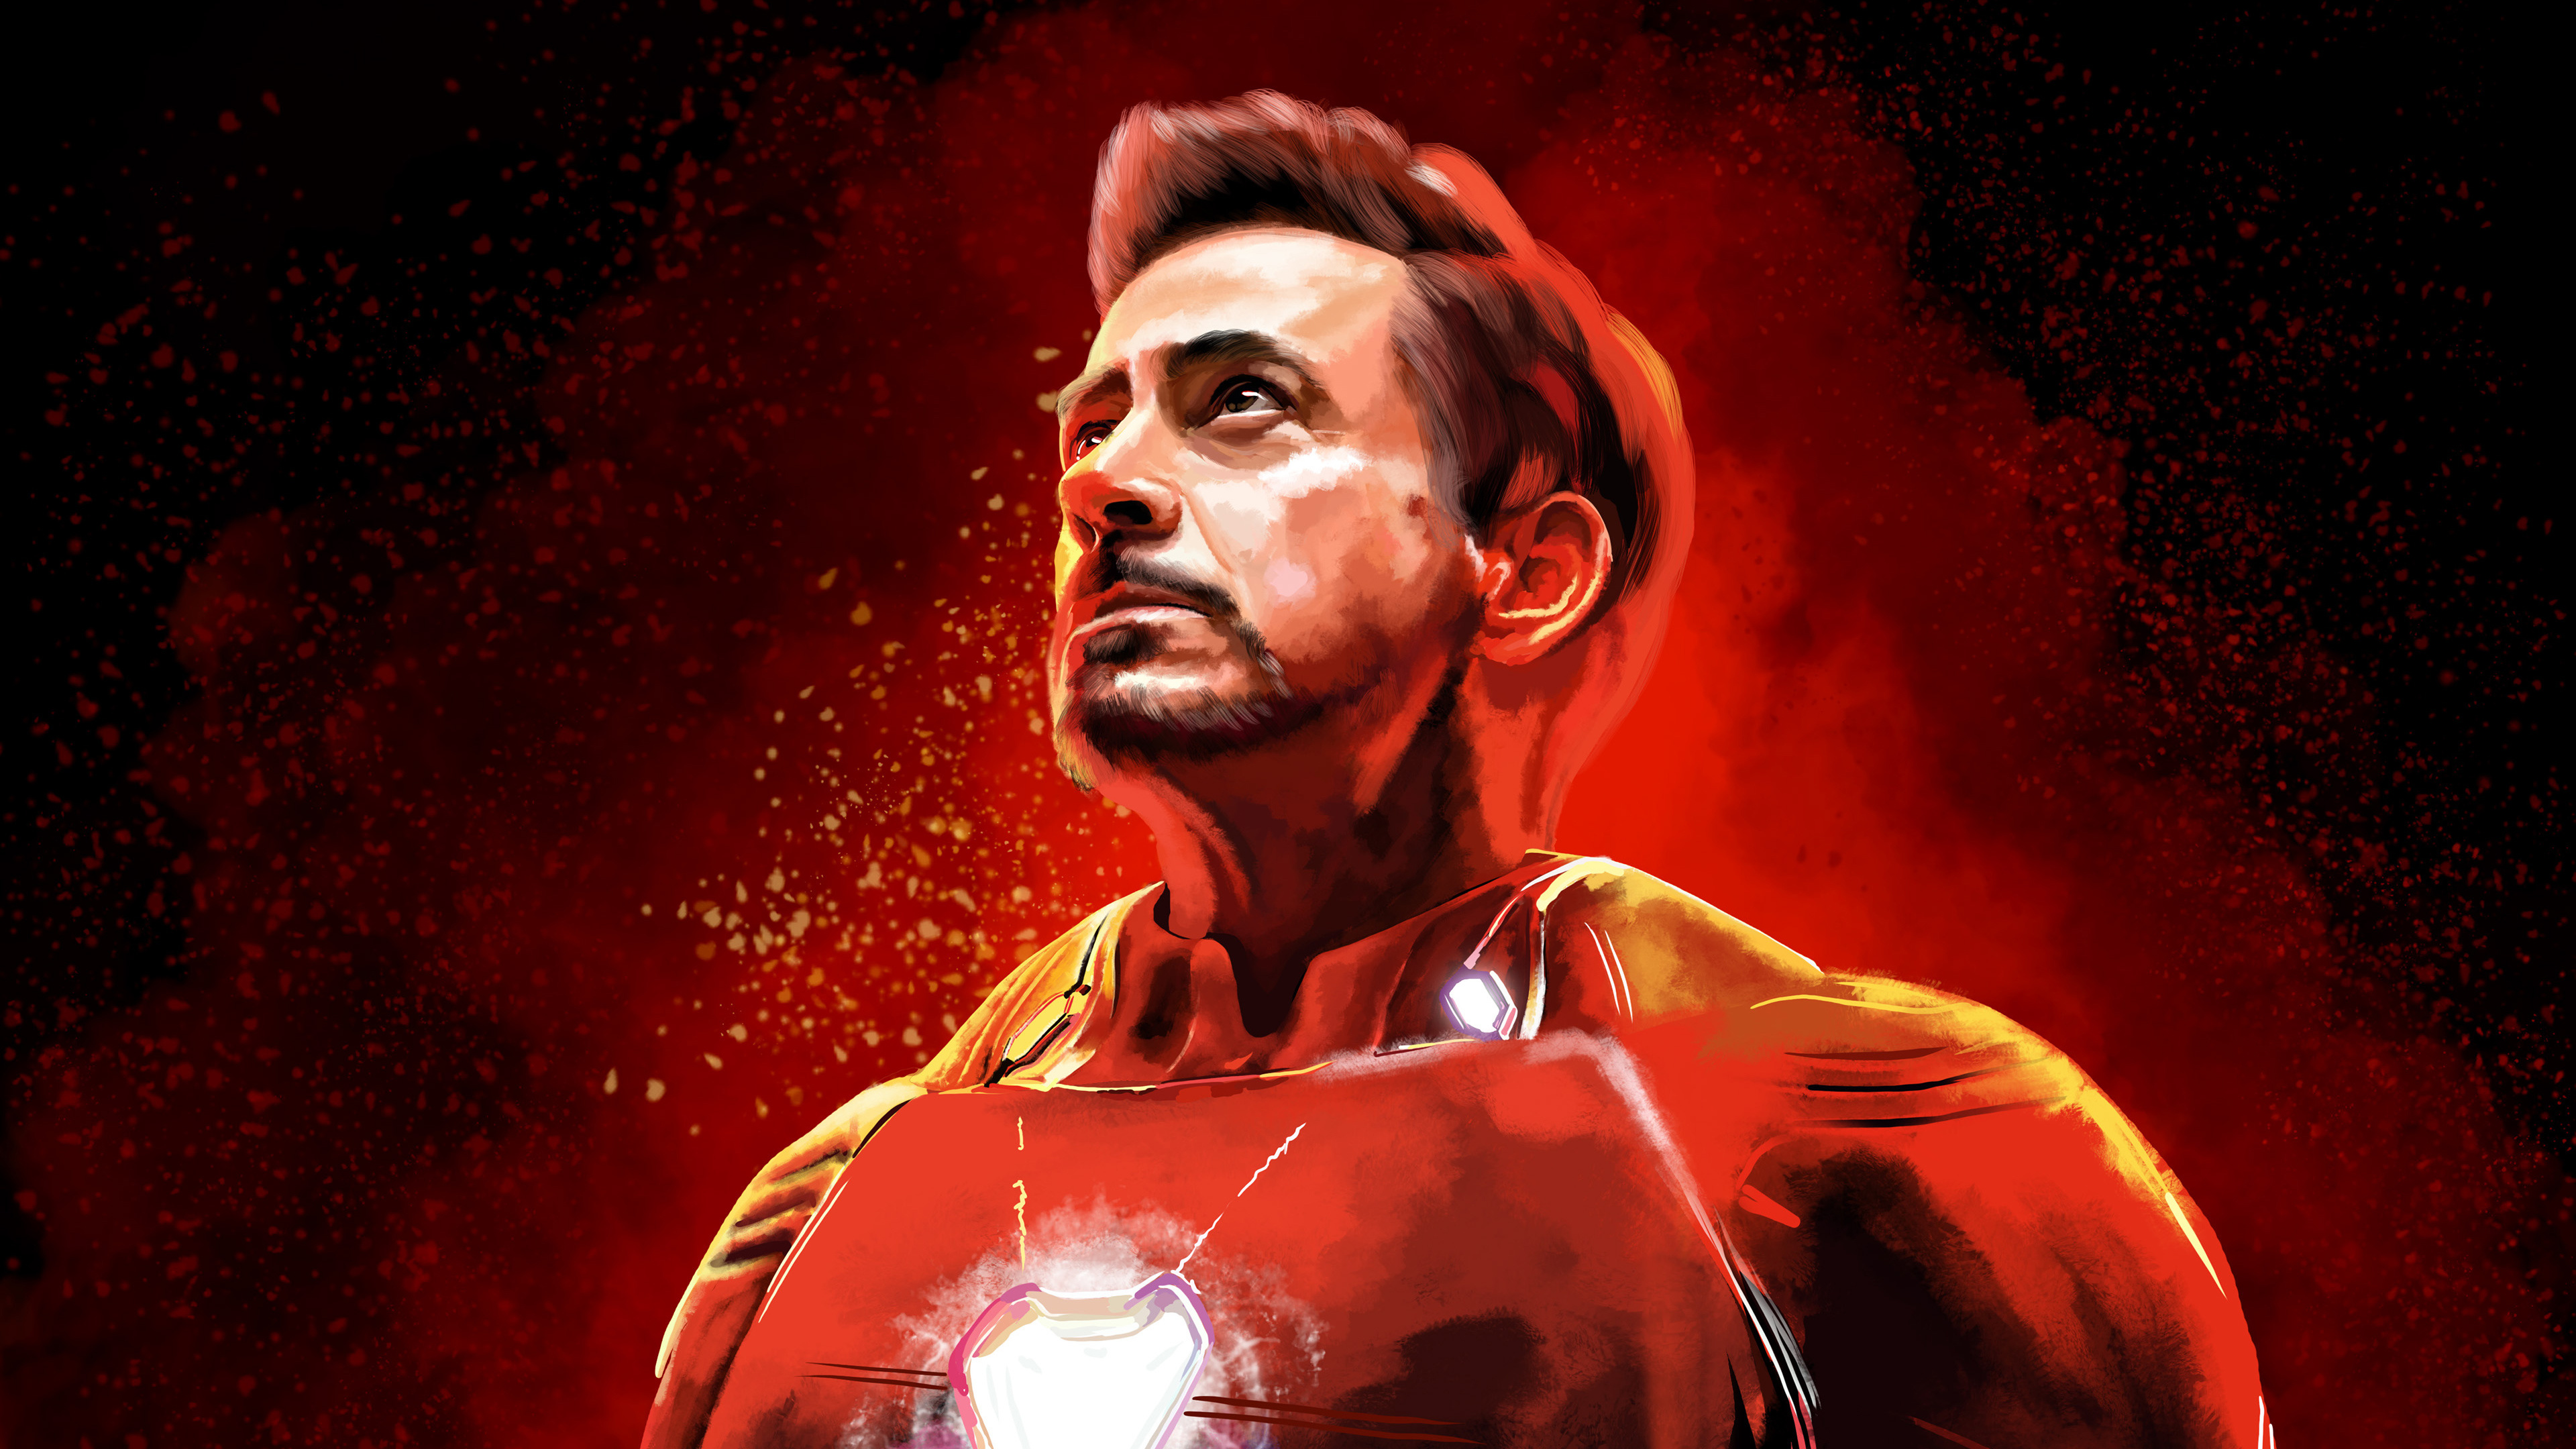 Robert Downey Jr as Iron Man Fanart Wallpaper 4k Ultra HD